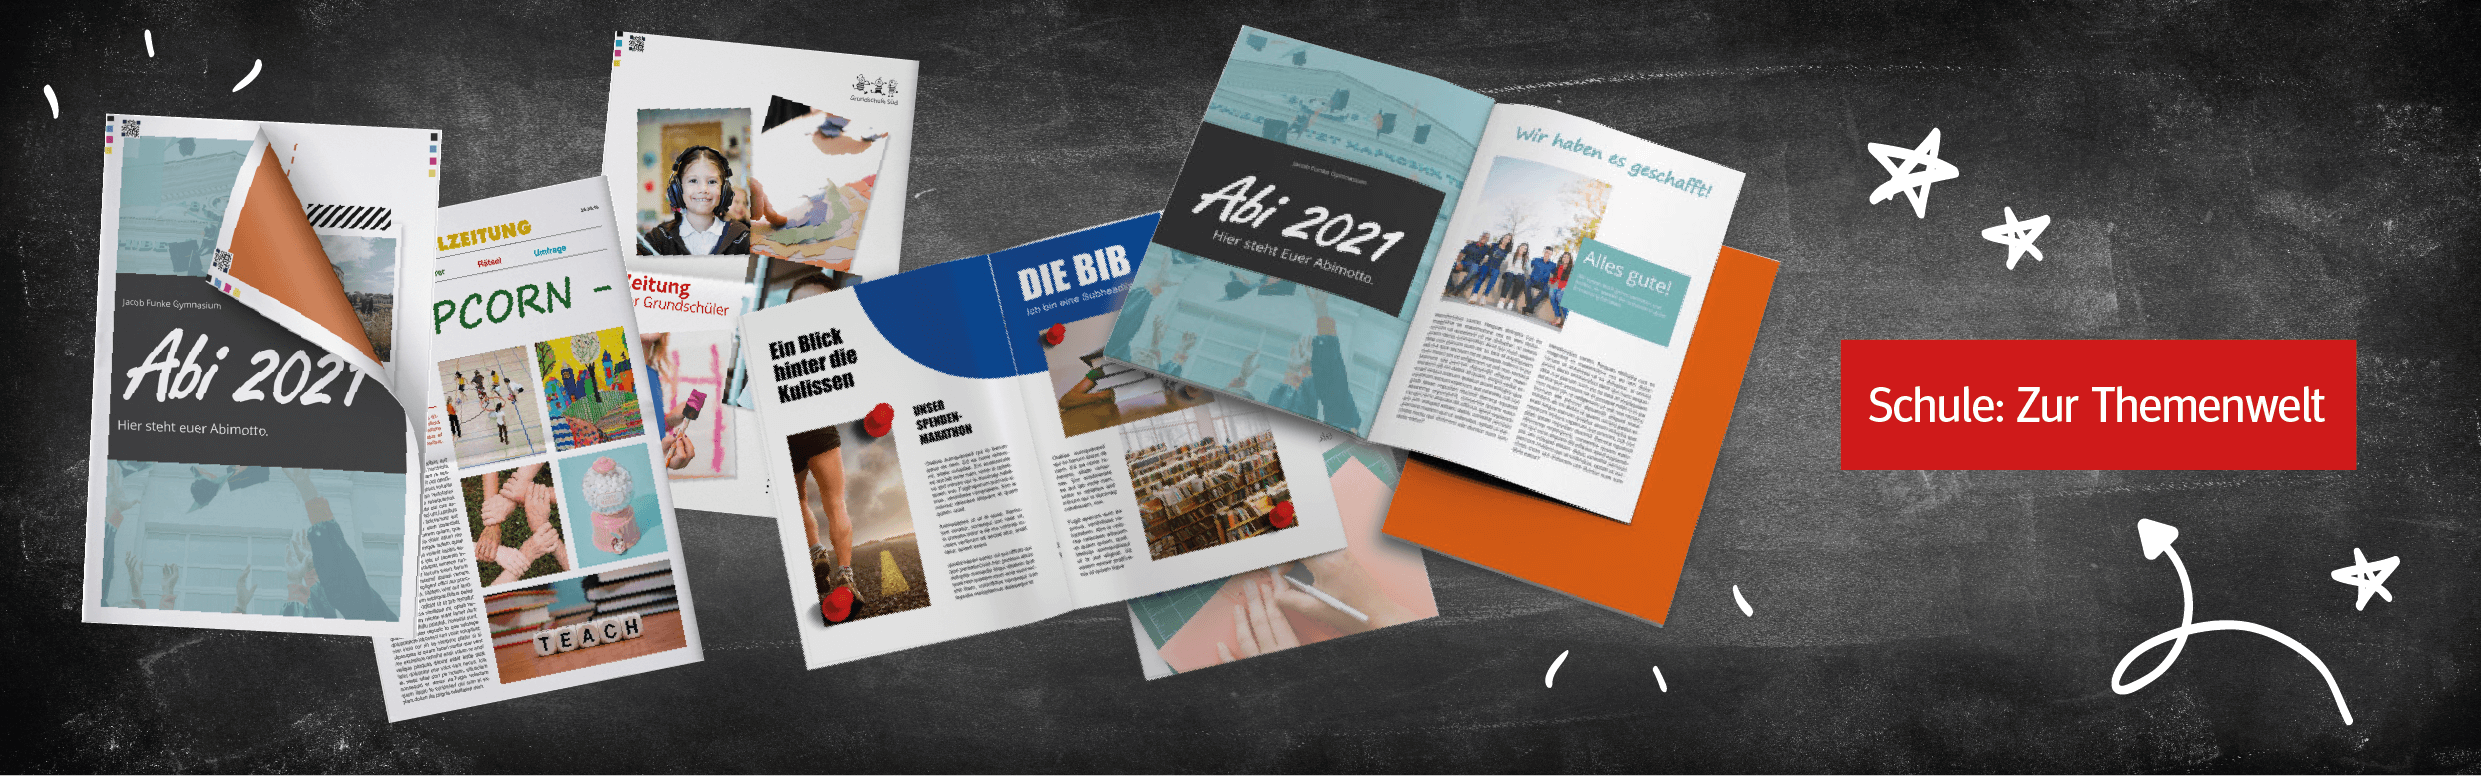 Vorlagen und Ideen aus der Themenwelt Schülerzeitung